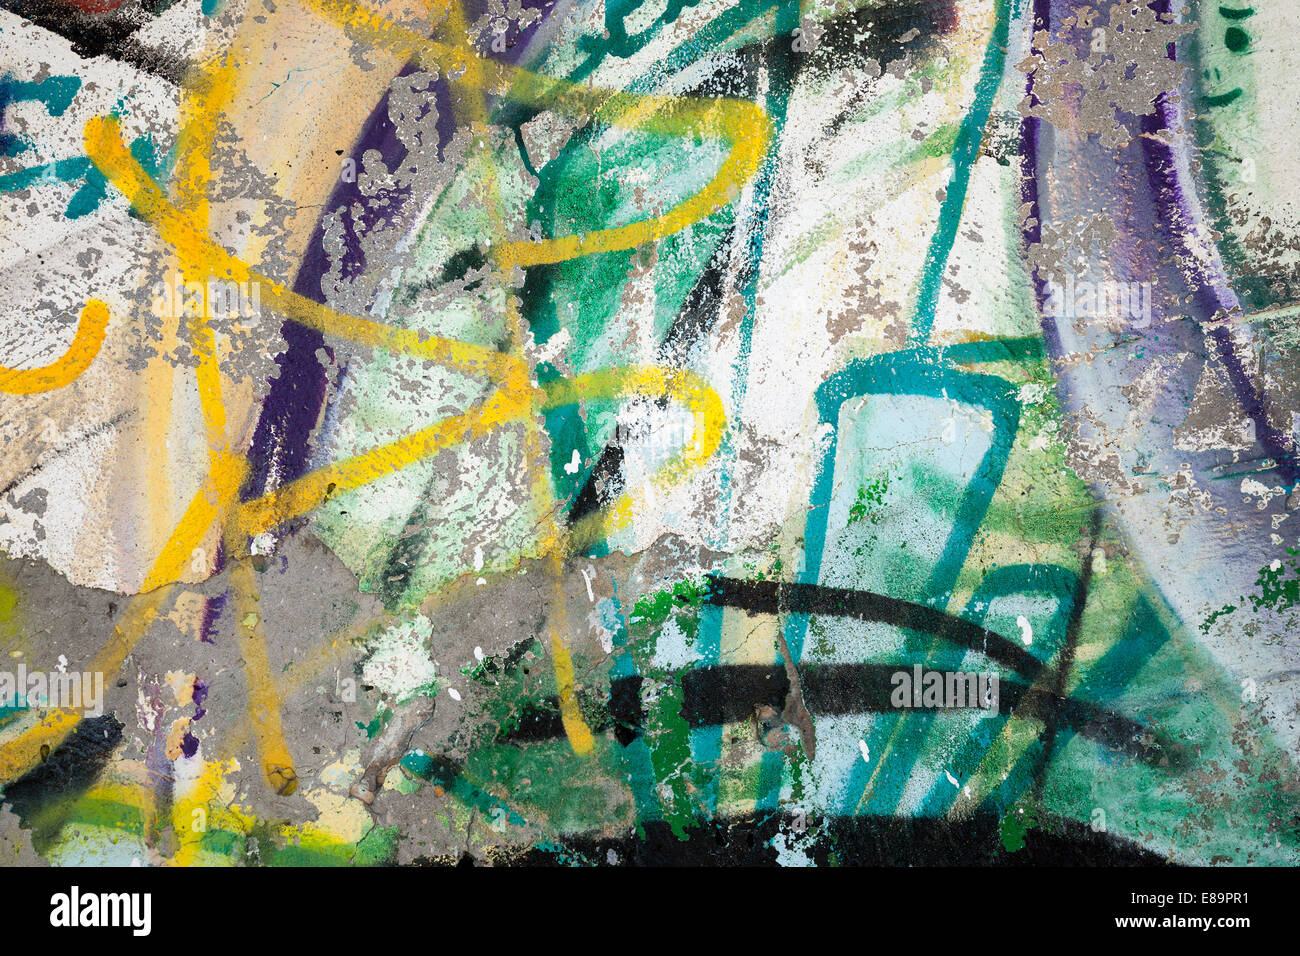 Abstract vernice colorata frammento graffiti su grigio urbano parete di calcestruzzo Foto Stock